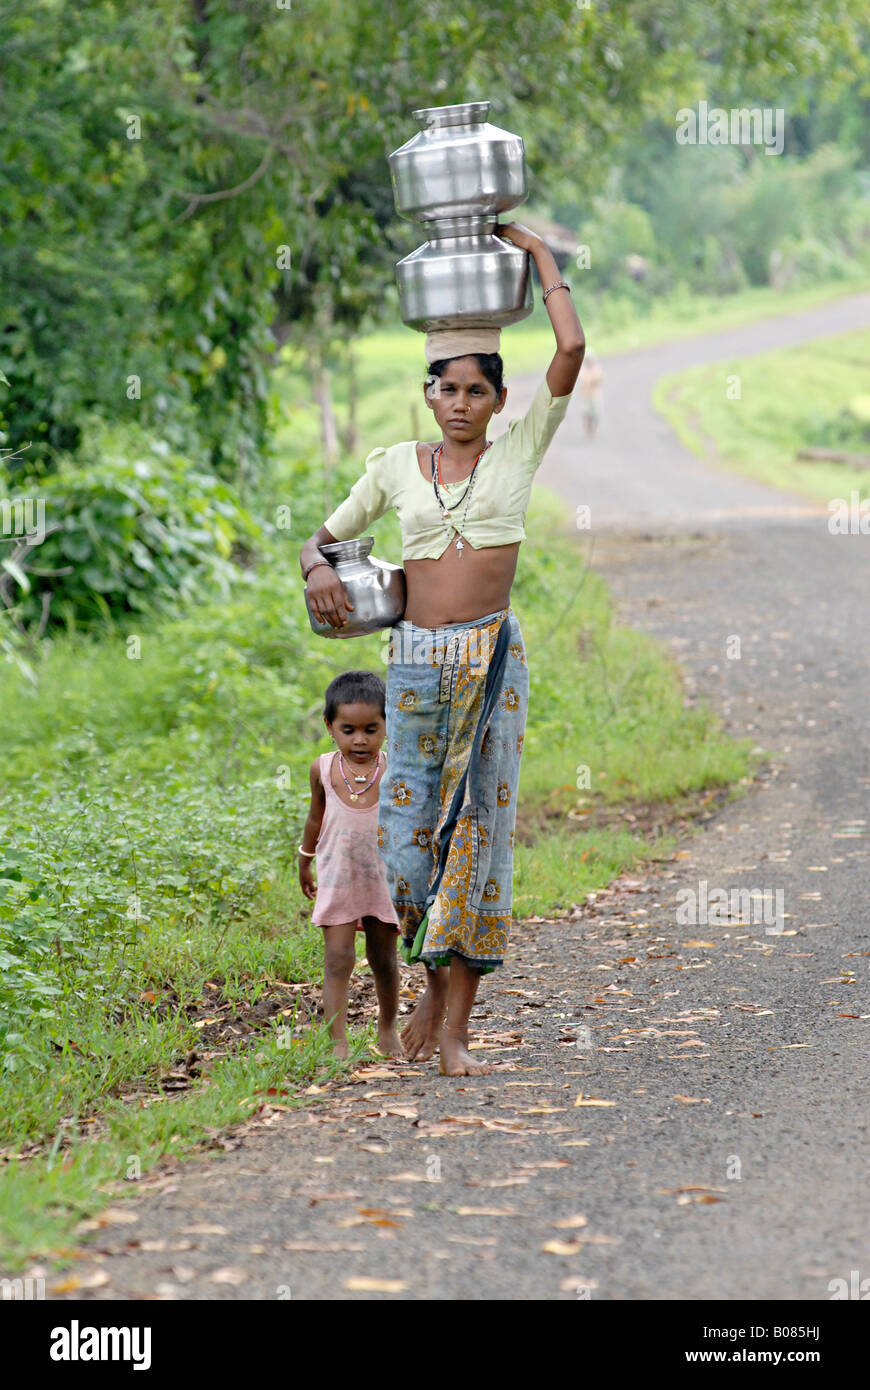 Mère avec son enfant pour transporter de l'eau des pots. Tribu Warli, Thane, Maharashtra, Inde Banque D'Images